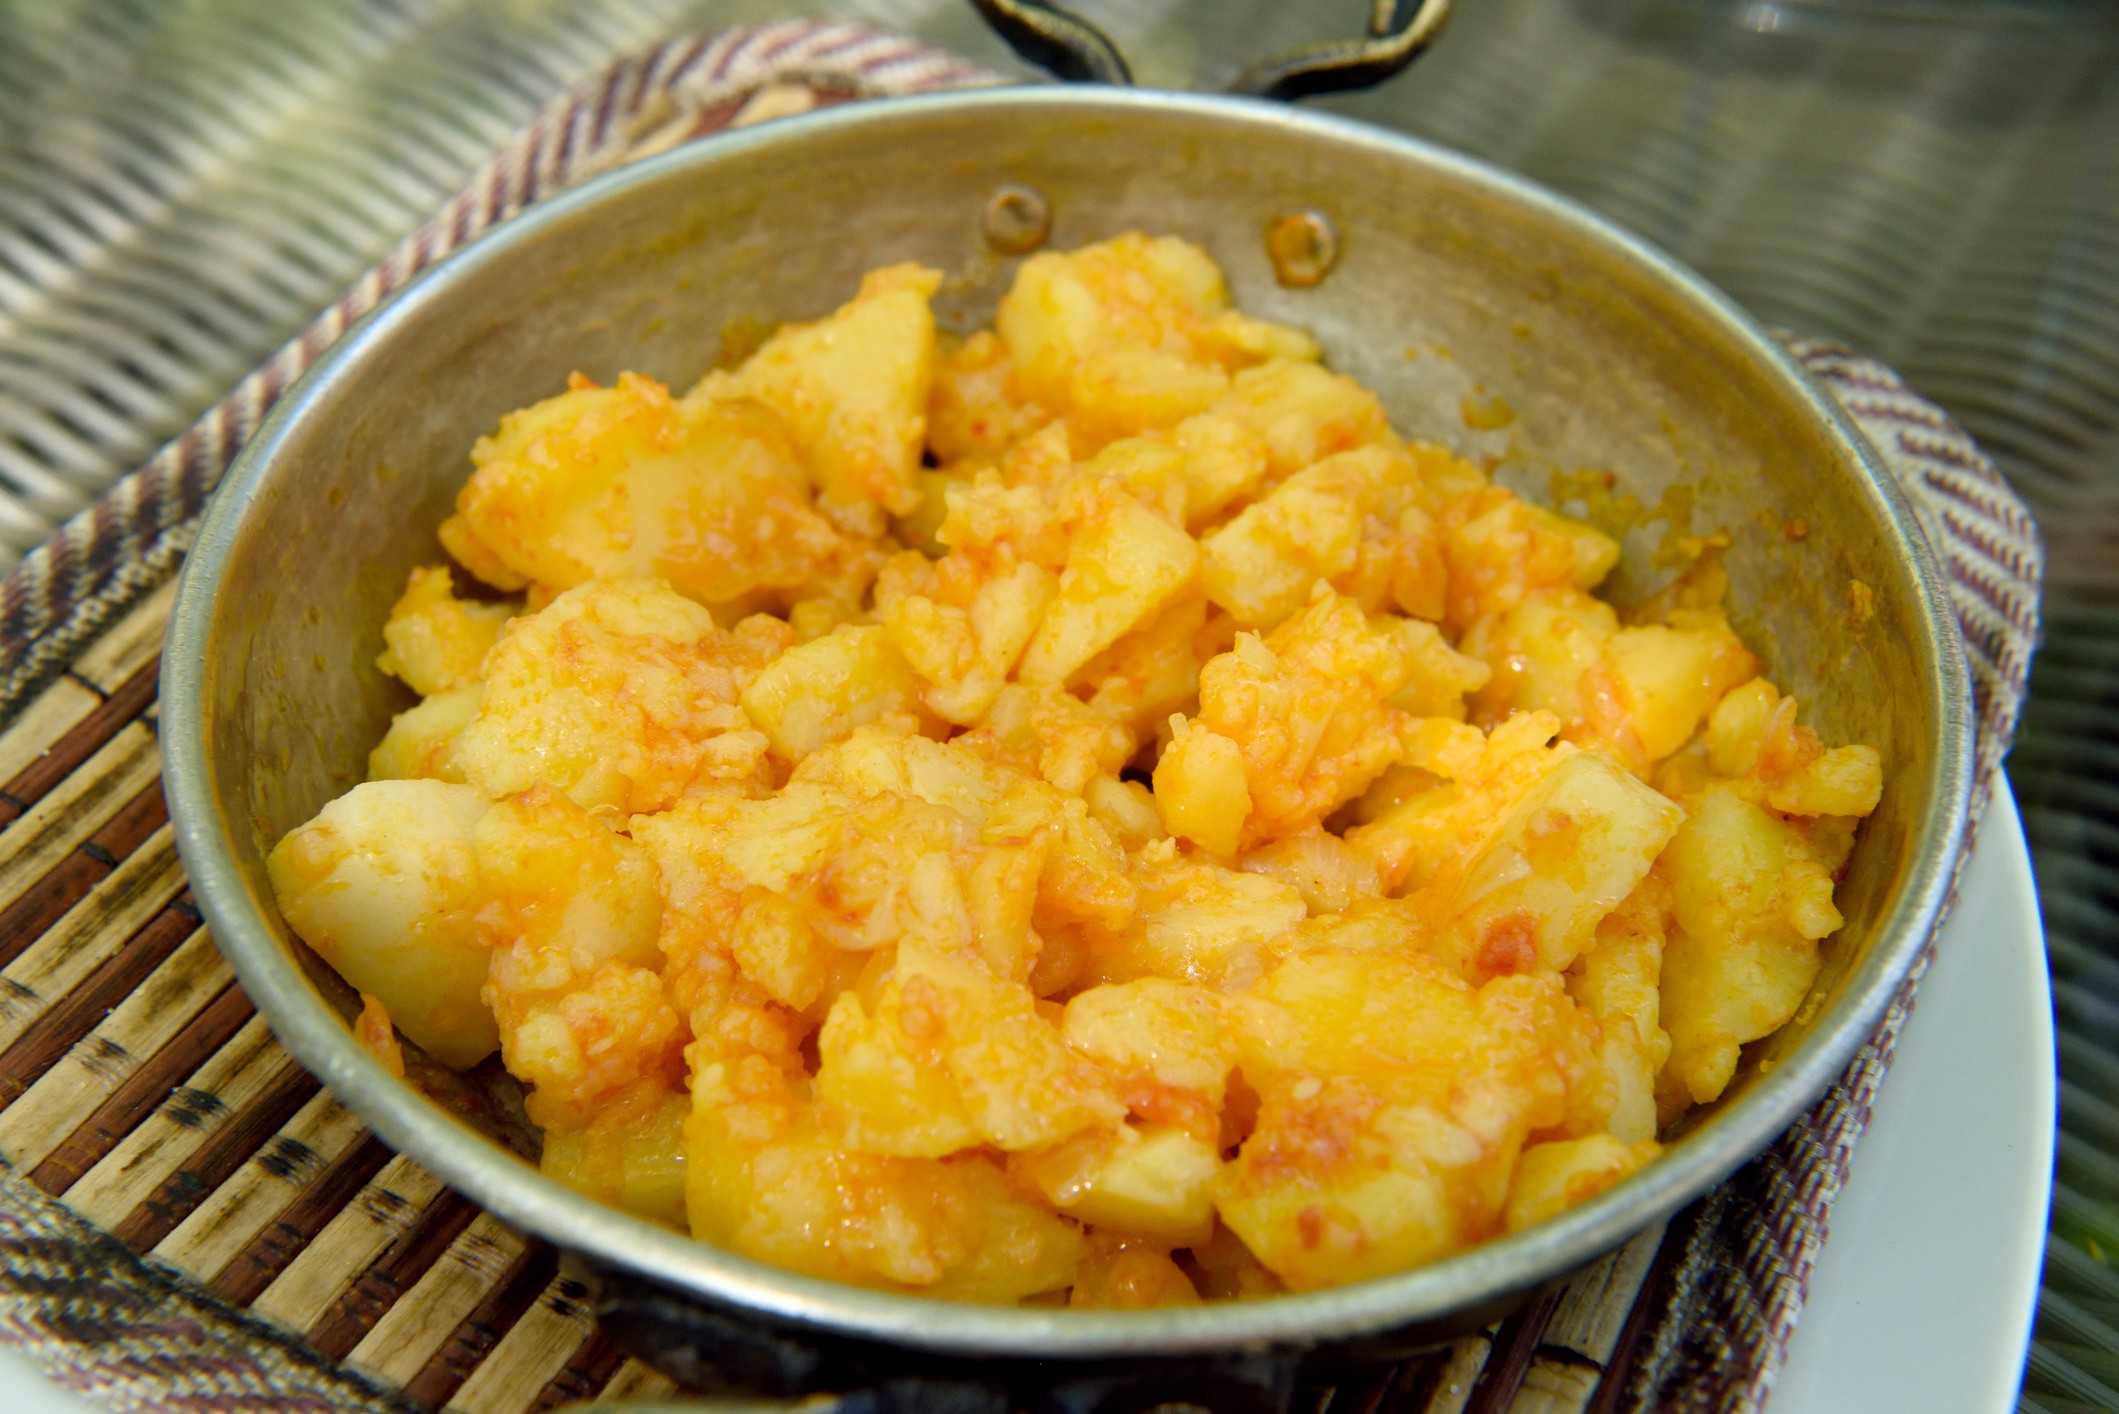 Cartofi răntăliți ardelenești cu usturoi, ceapă și ardei